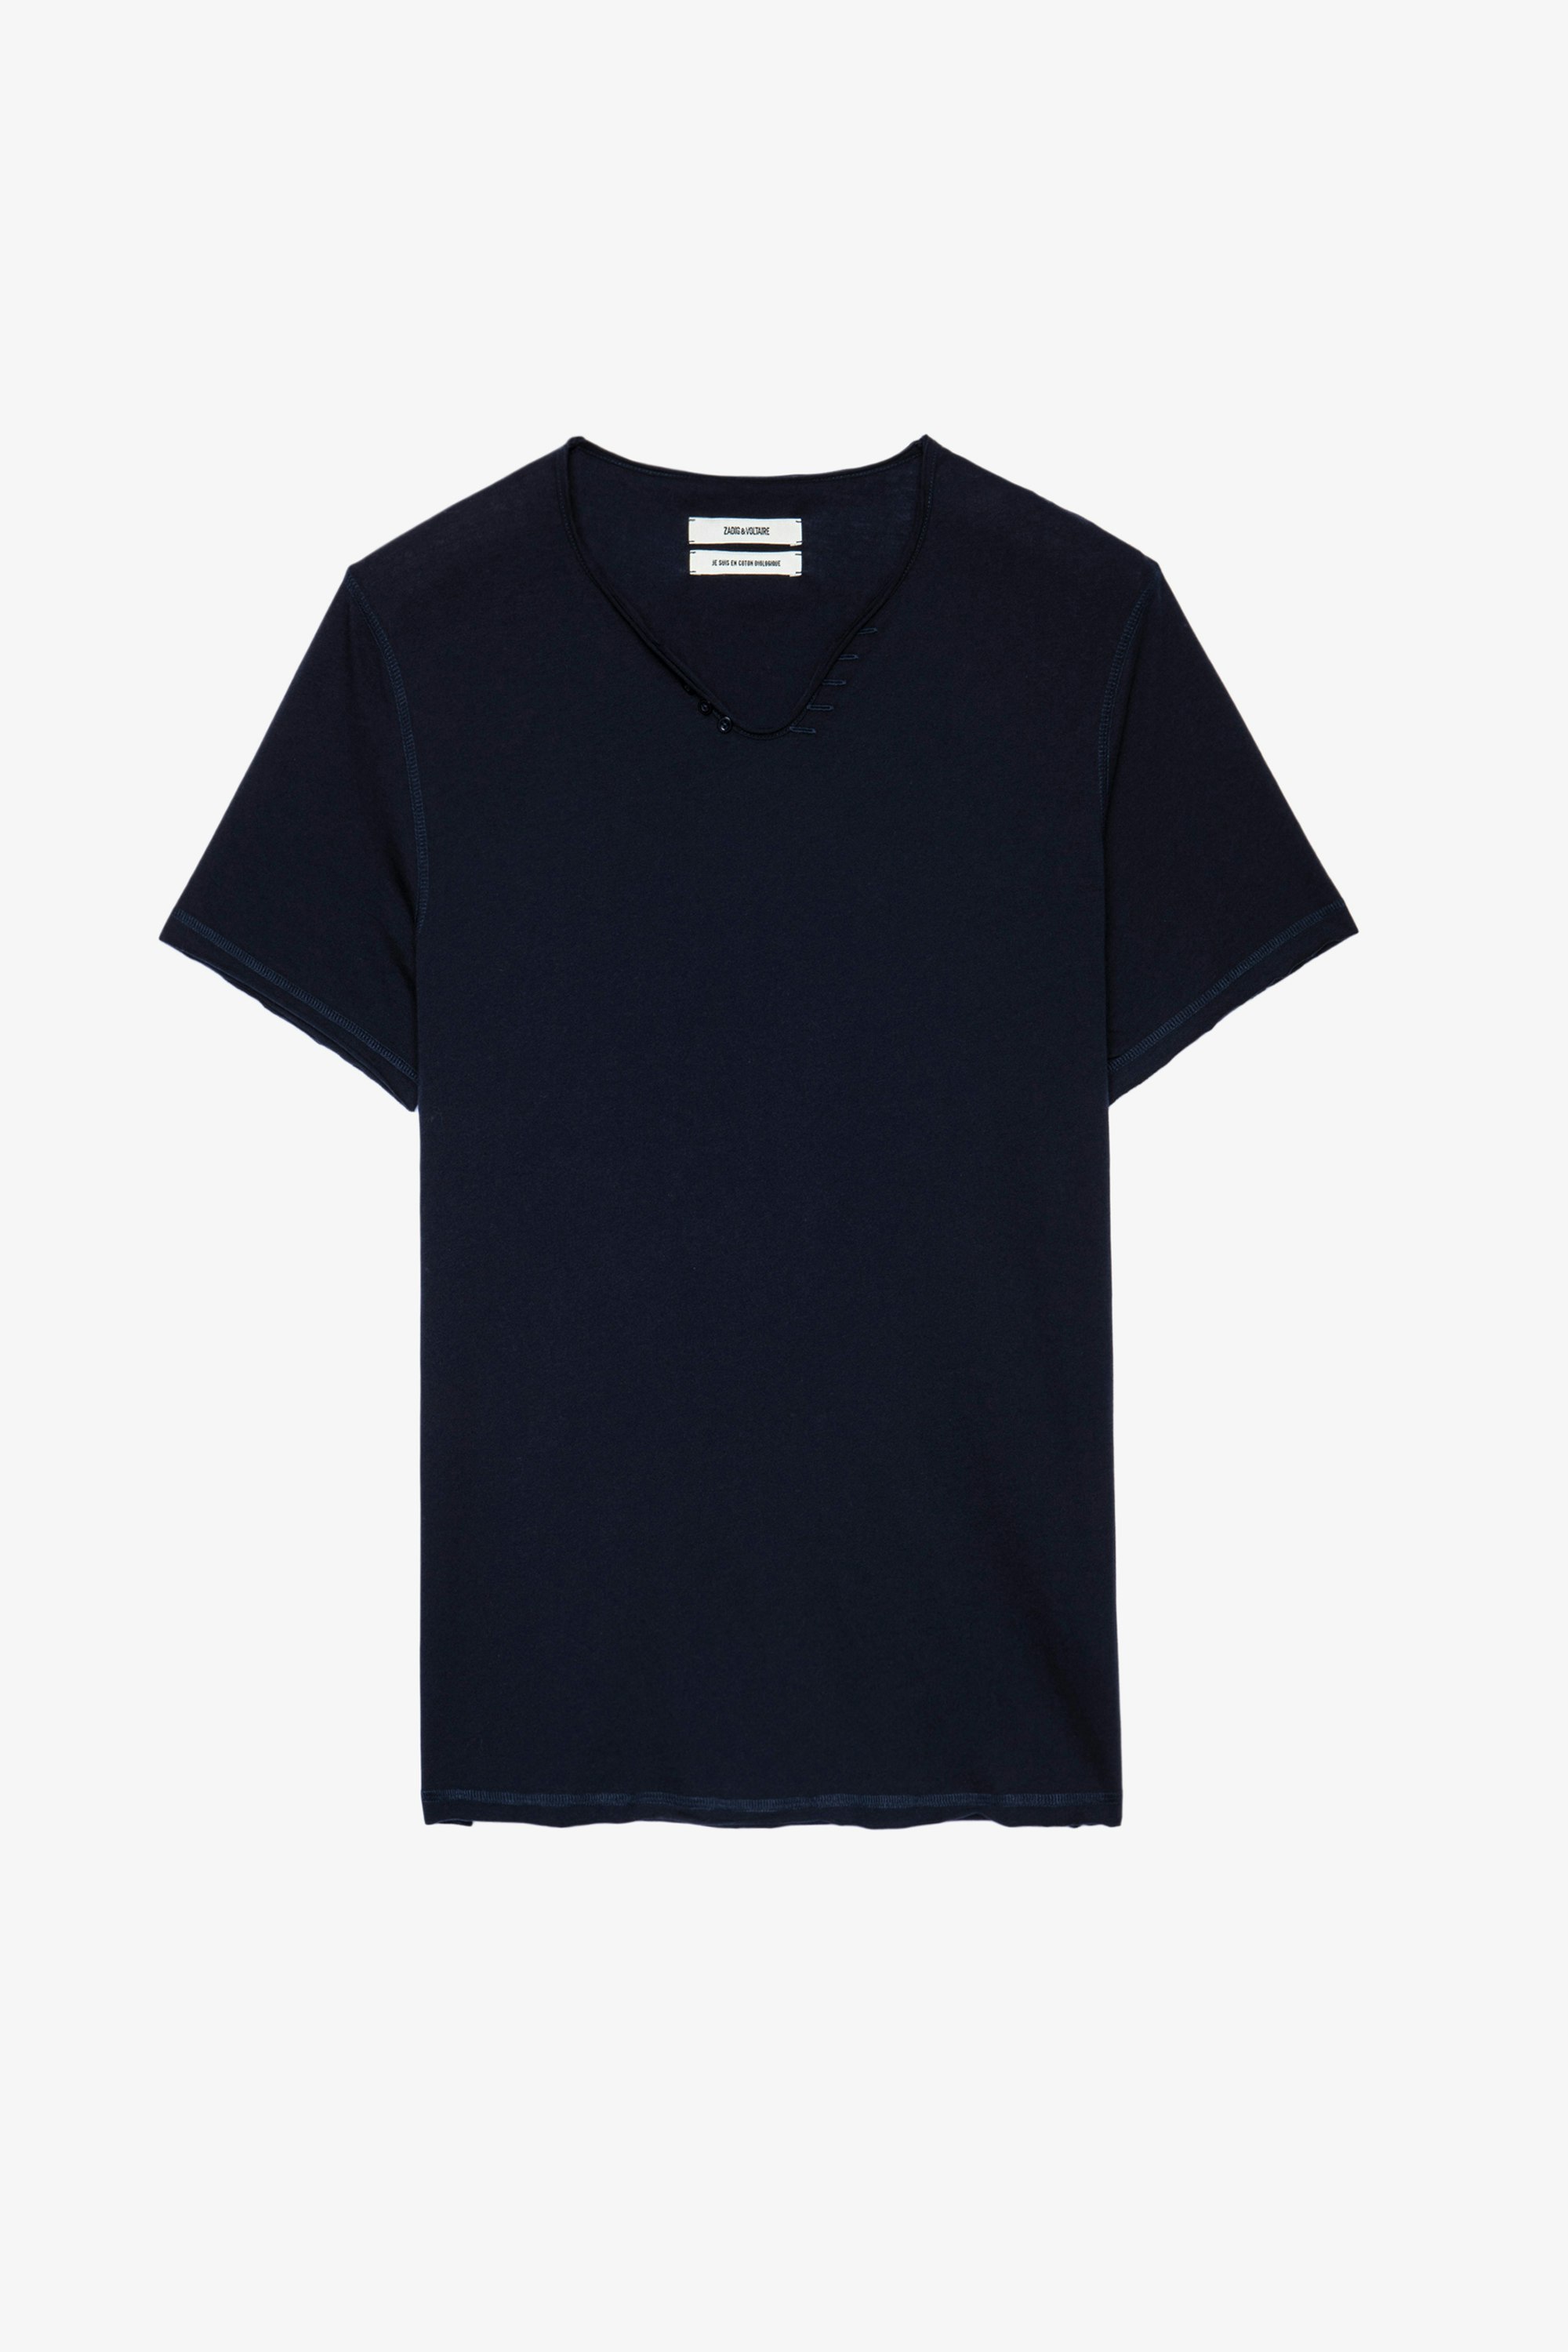 Monastir T-shirt - Men’s blue cotton henley T-shirt